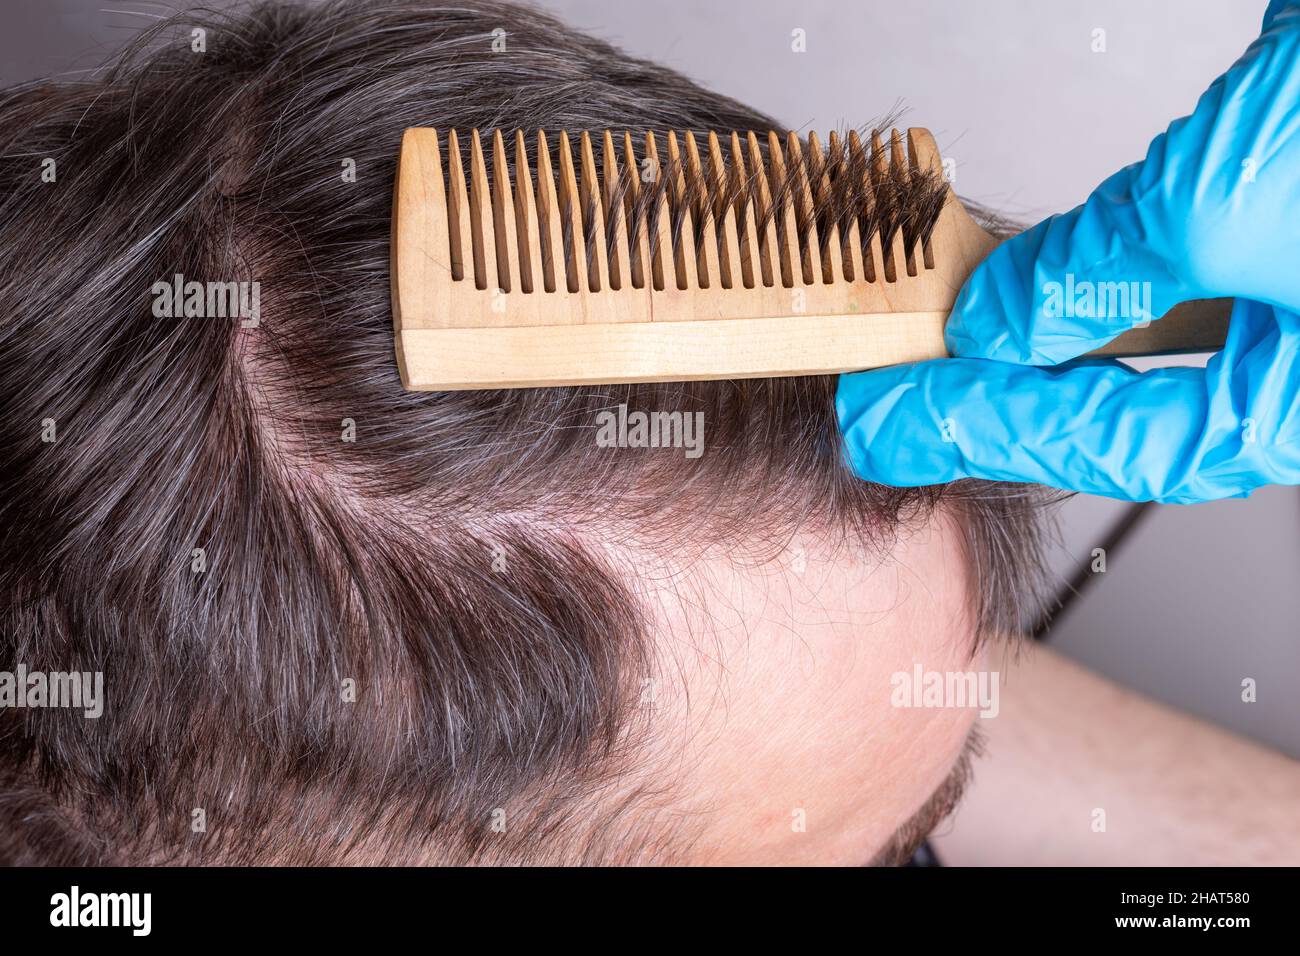 Kahlheit oder Haarausfall beim Menschen - ein Arzt in blauen medizinischen Handschuhen untersucht die Haare und die Kopfhaut eines Mannes, Nahaufnahme, Draufsicht. Der Arzt verwendet zur Untersuchung einen Kamm Stockfoto